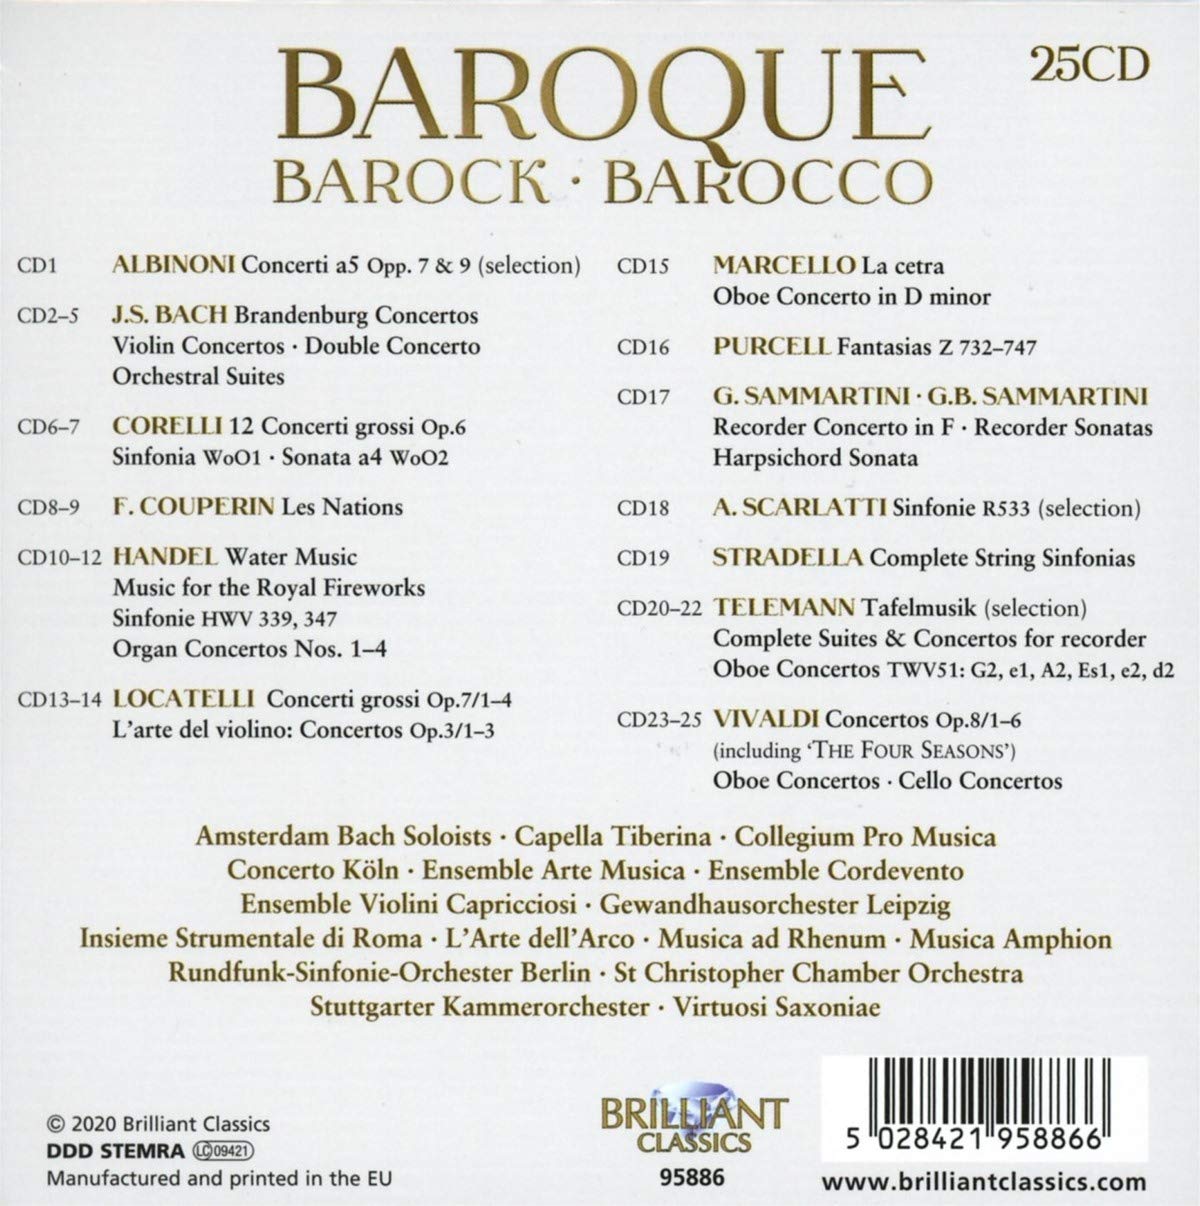 17-18세기 바로크 작곡가들의 대표 합주, 협주곡 (Baroque - Barock - Barocco)